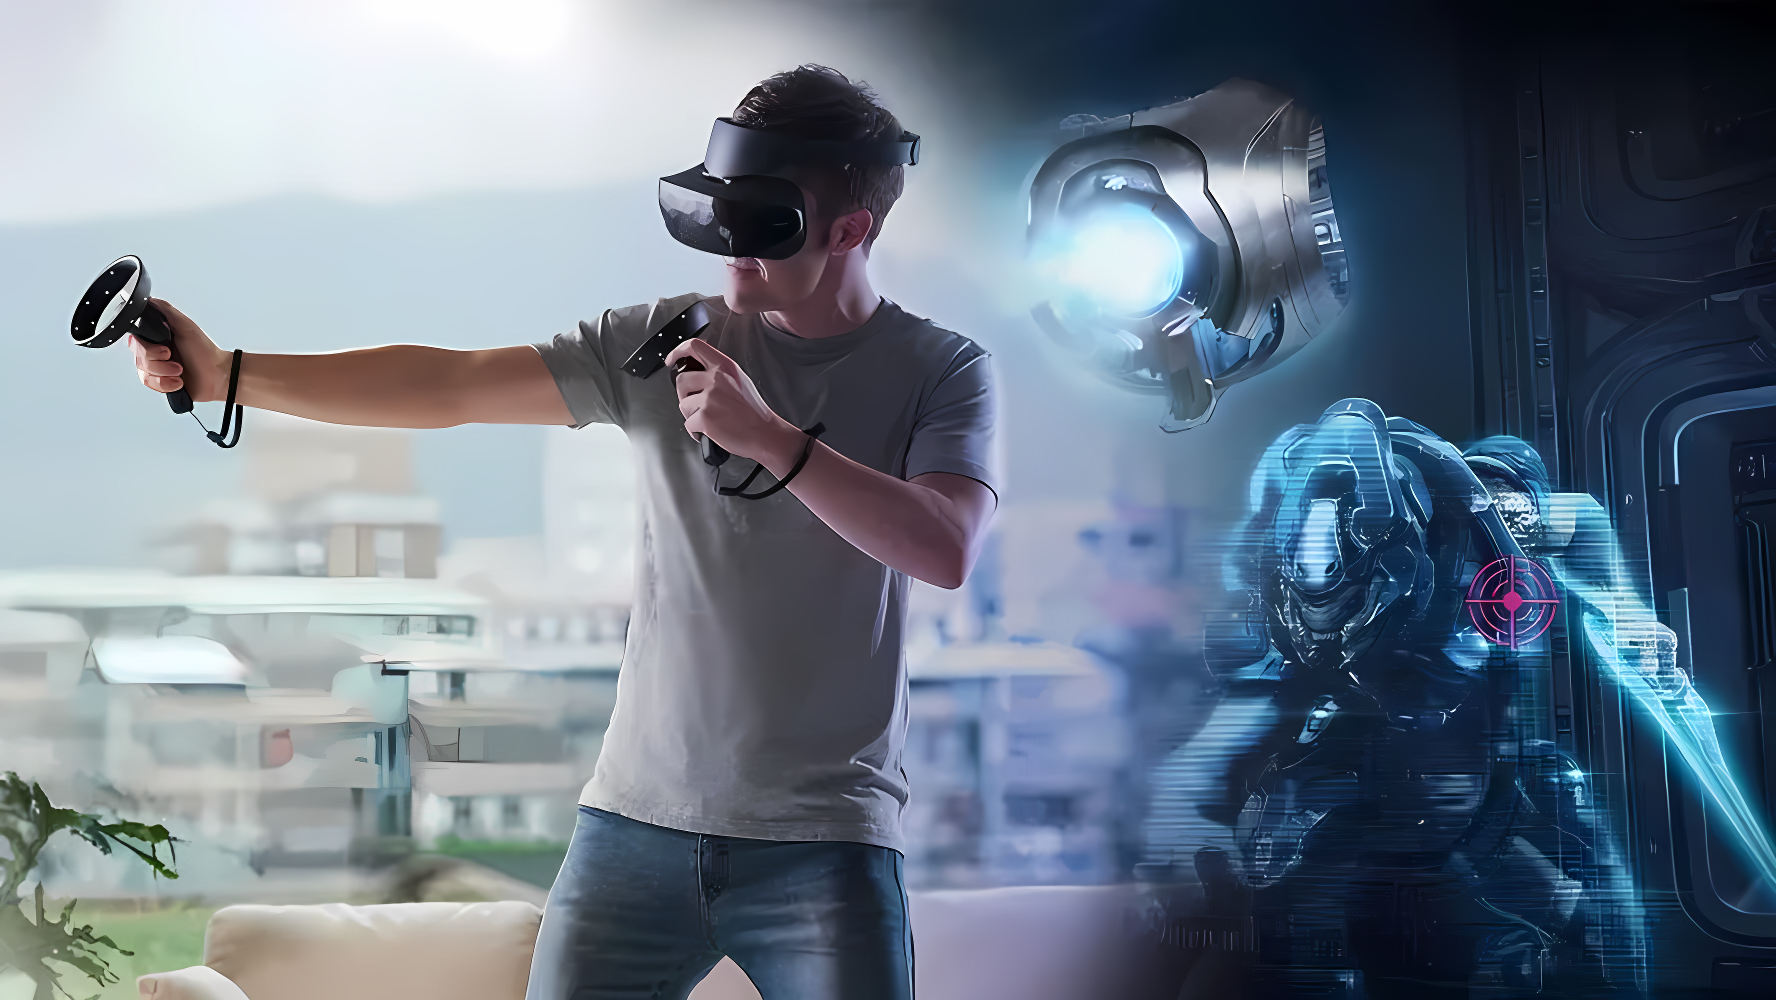 图片展示一位男士戴着虚拟现实头盔，在家中玩游戏，周围有科幻元素，如虚拟机器人和高科技装置。